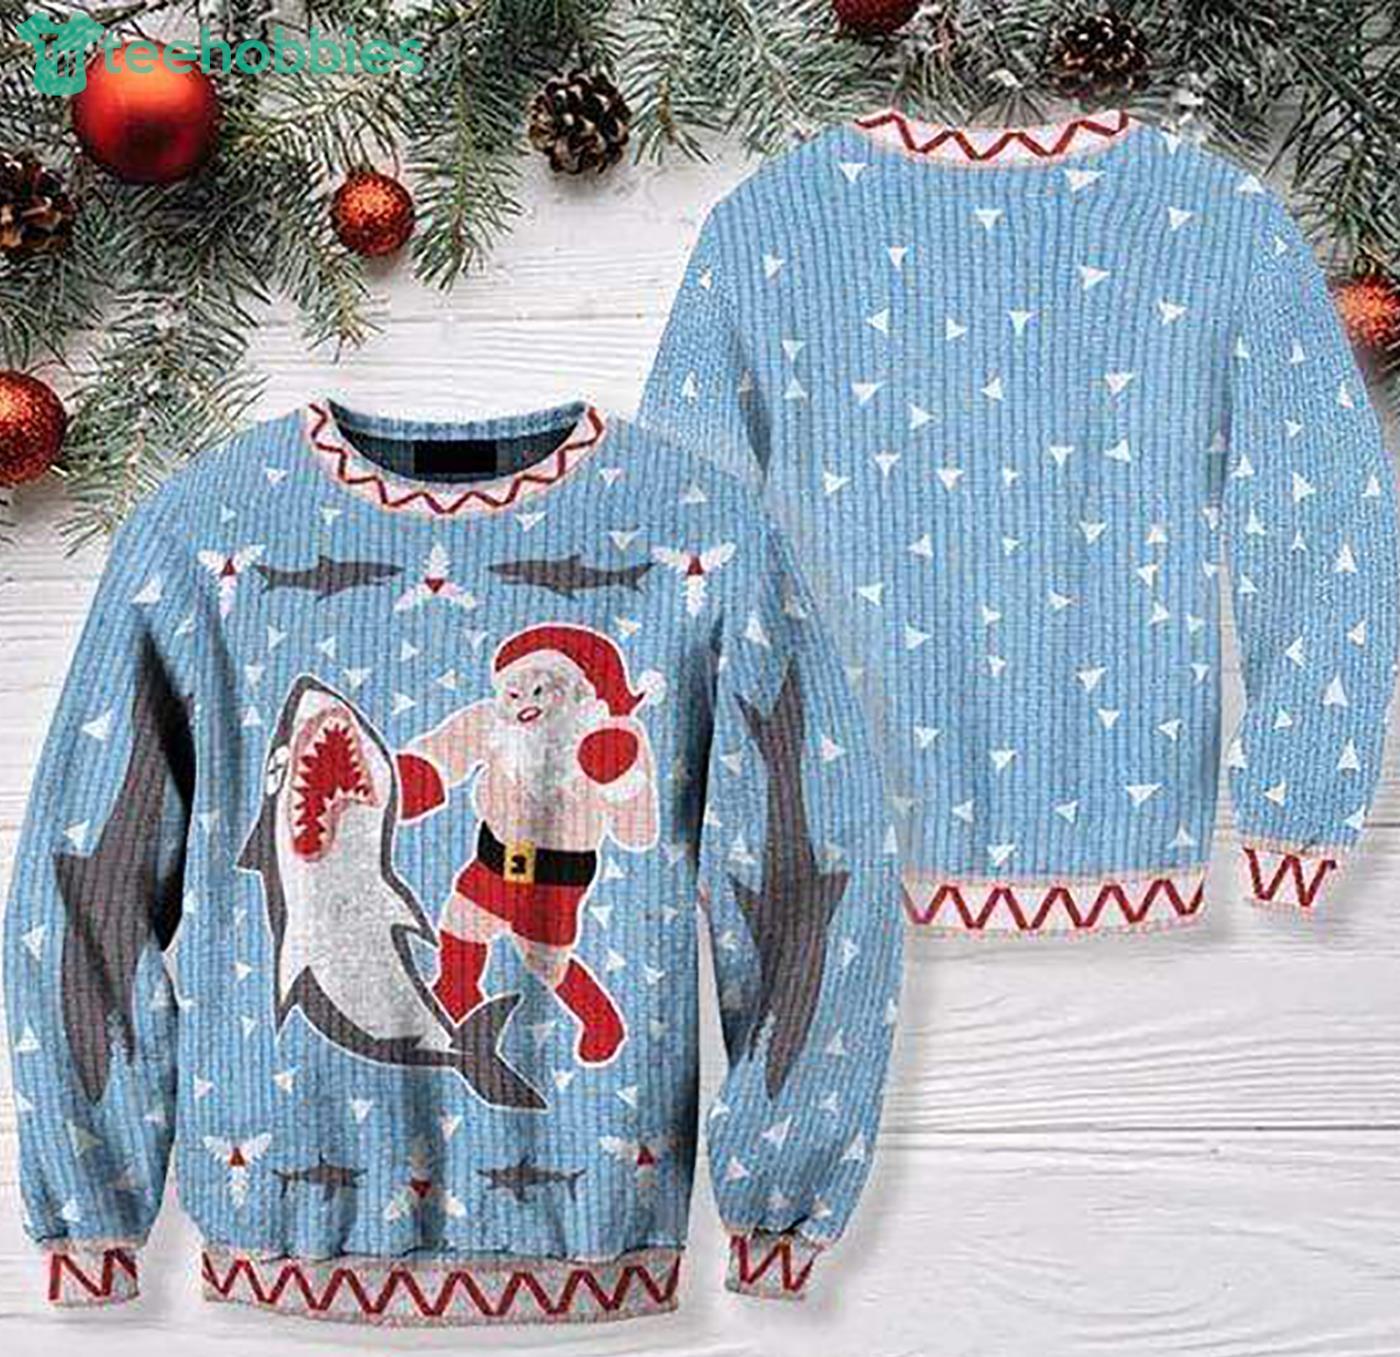 Christmas Gnomes San Jose Sharks Christmas Polo Shirt - Banantees